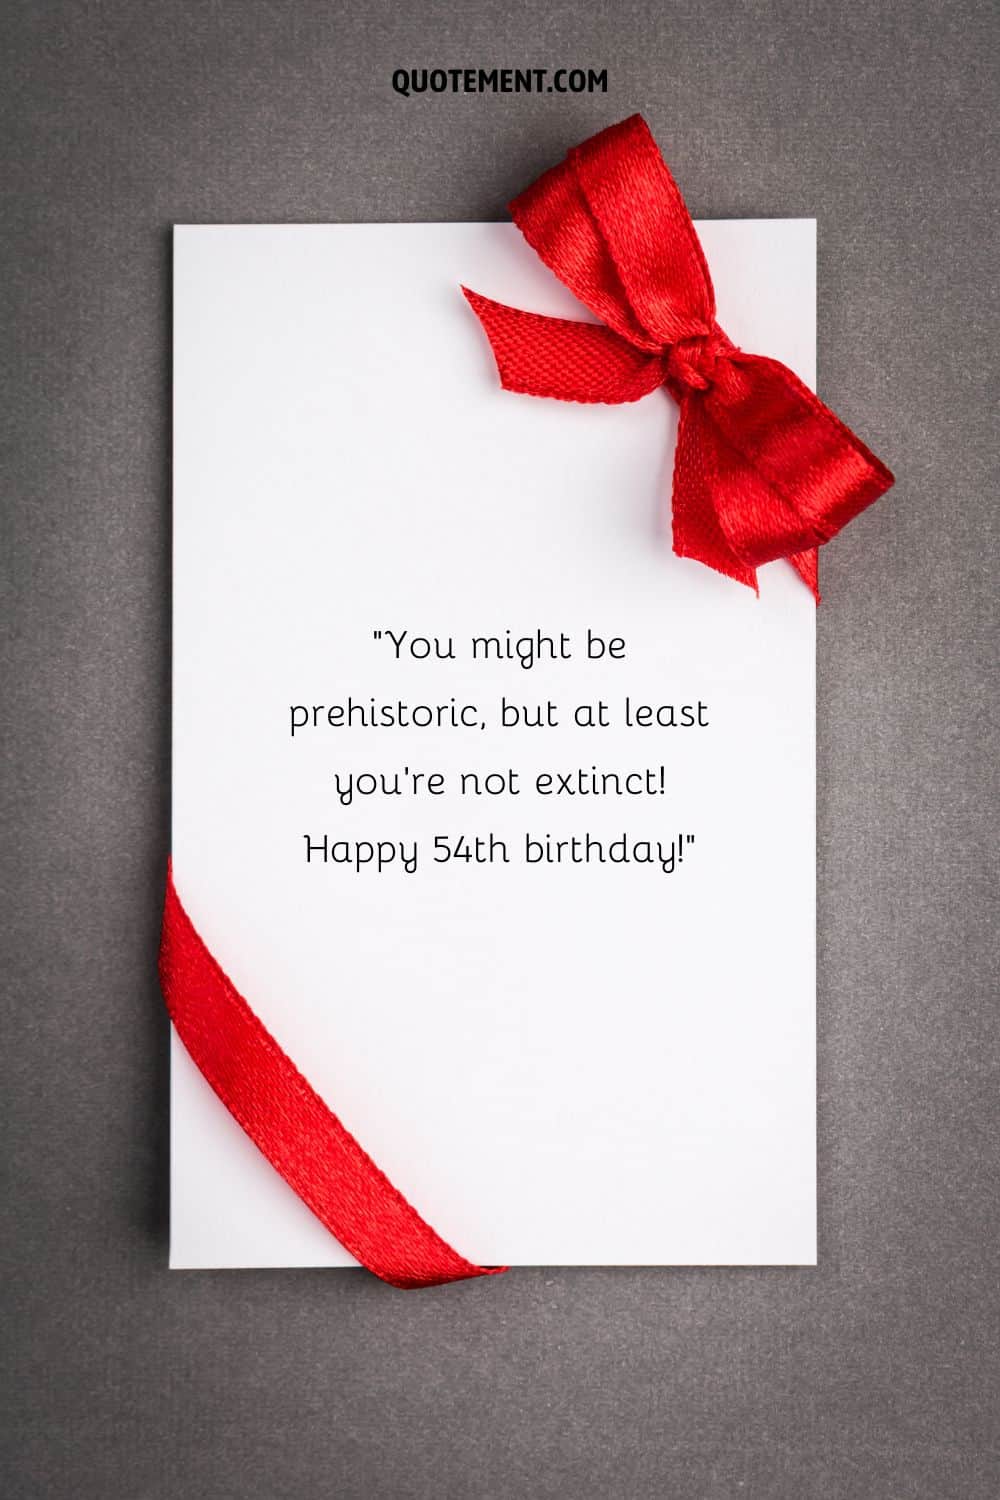 Divertido mensaje para su 54 cumpleaños en una tarjeta de cumpleaños blanca con un lazo rojo